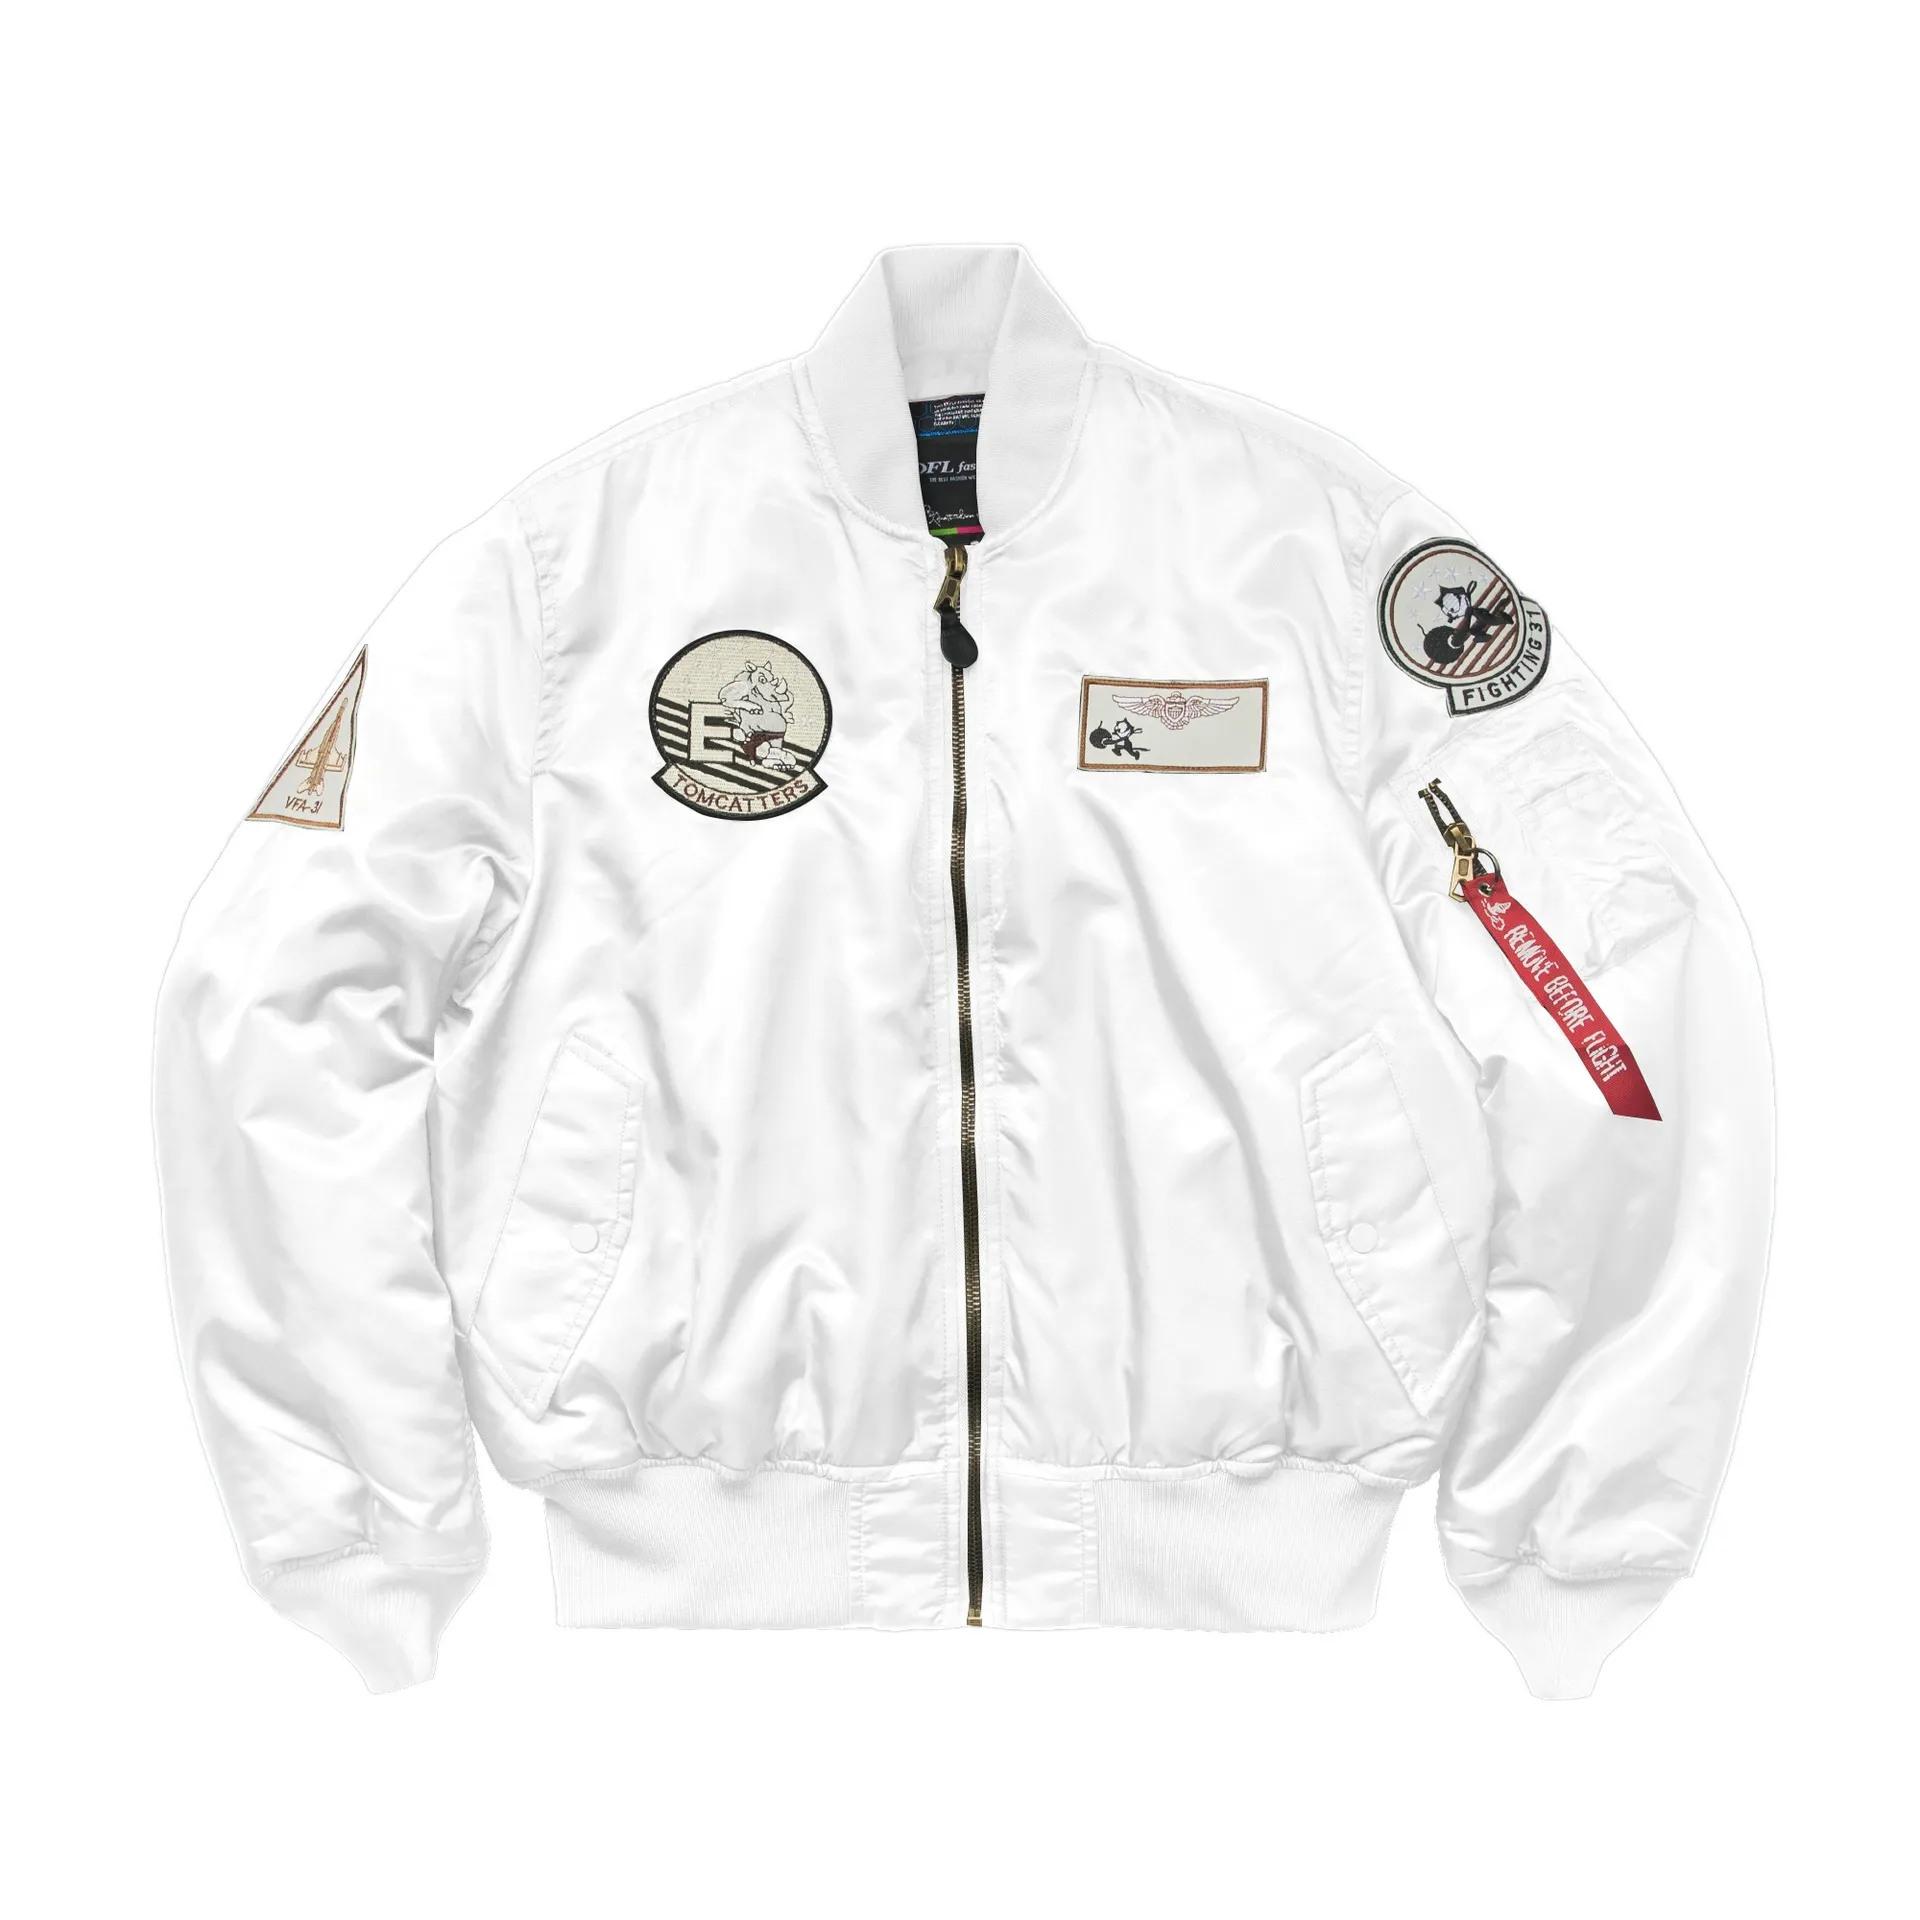 新しい高品質のレトロな男性/女性のパイロットエポレットnオーバーオールジャケット野球ジャージー刺繍MA-1ジャケットジャケット